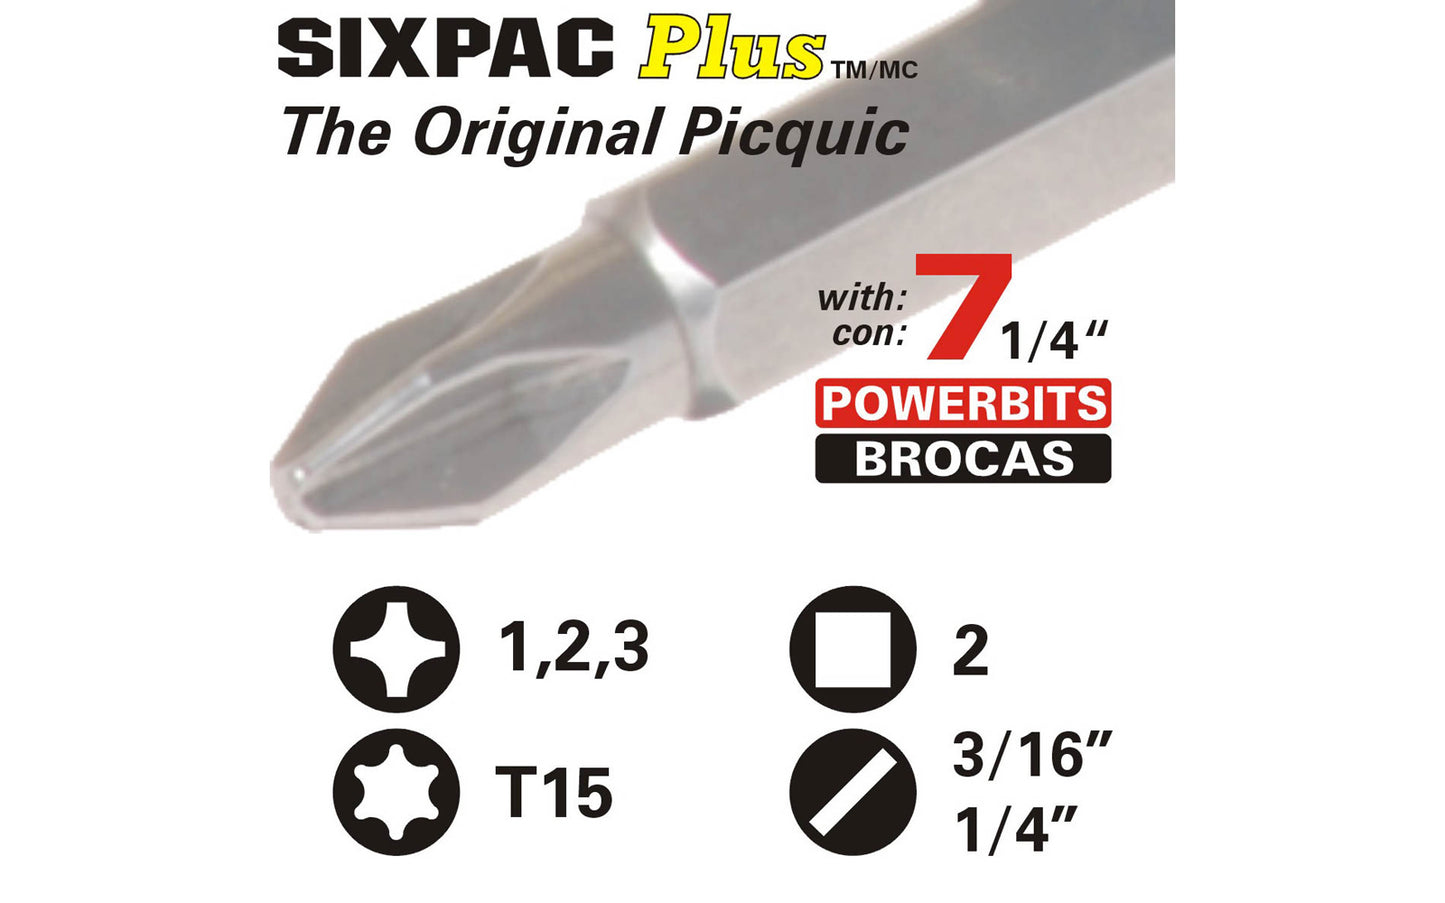 Picquic Black "Sixpac Plus" Multi-Bit Screwdriver